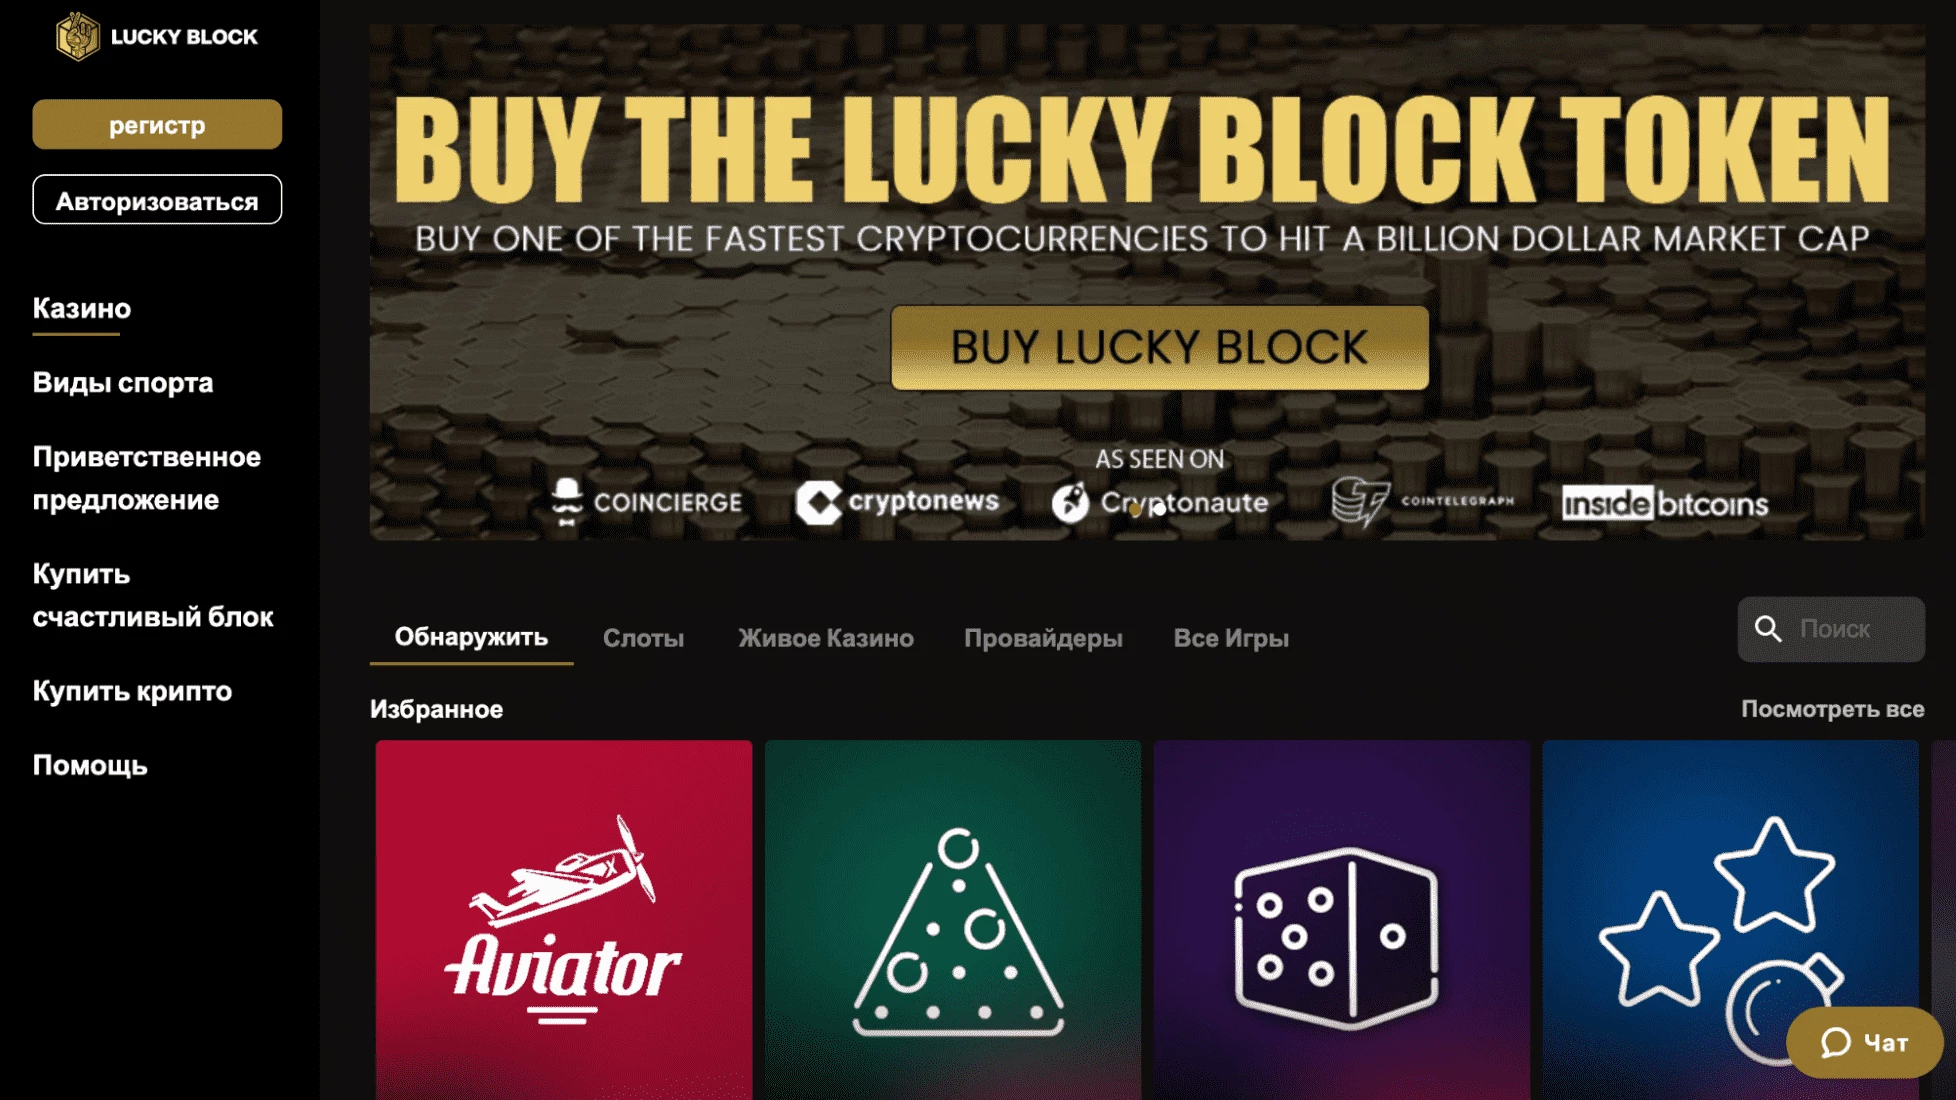 Интерфейс сайта проекта Lucky Block